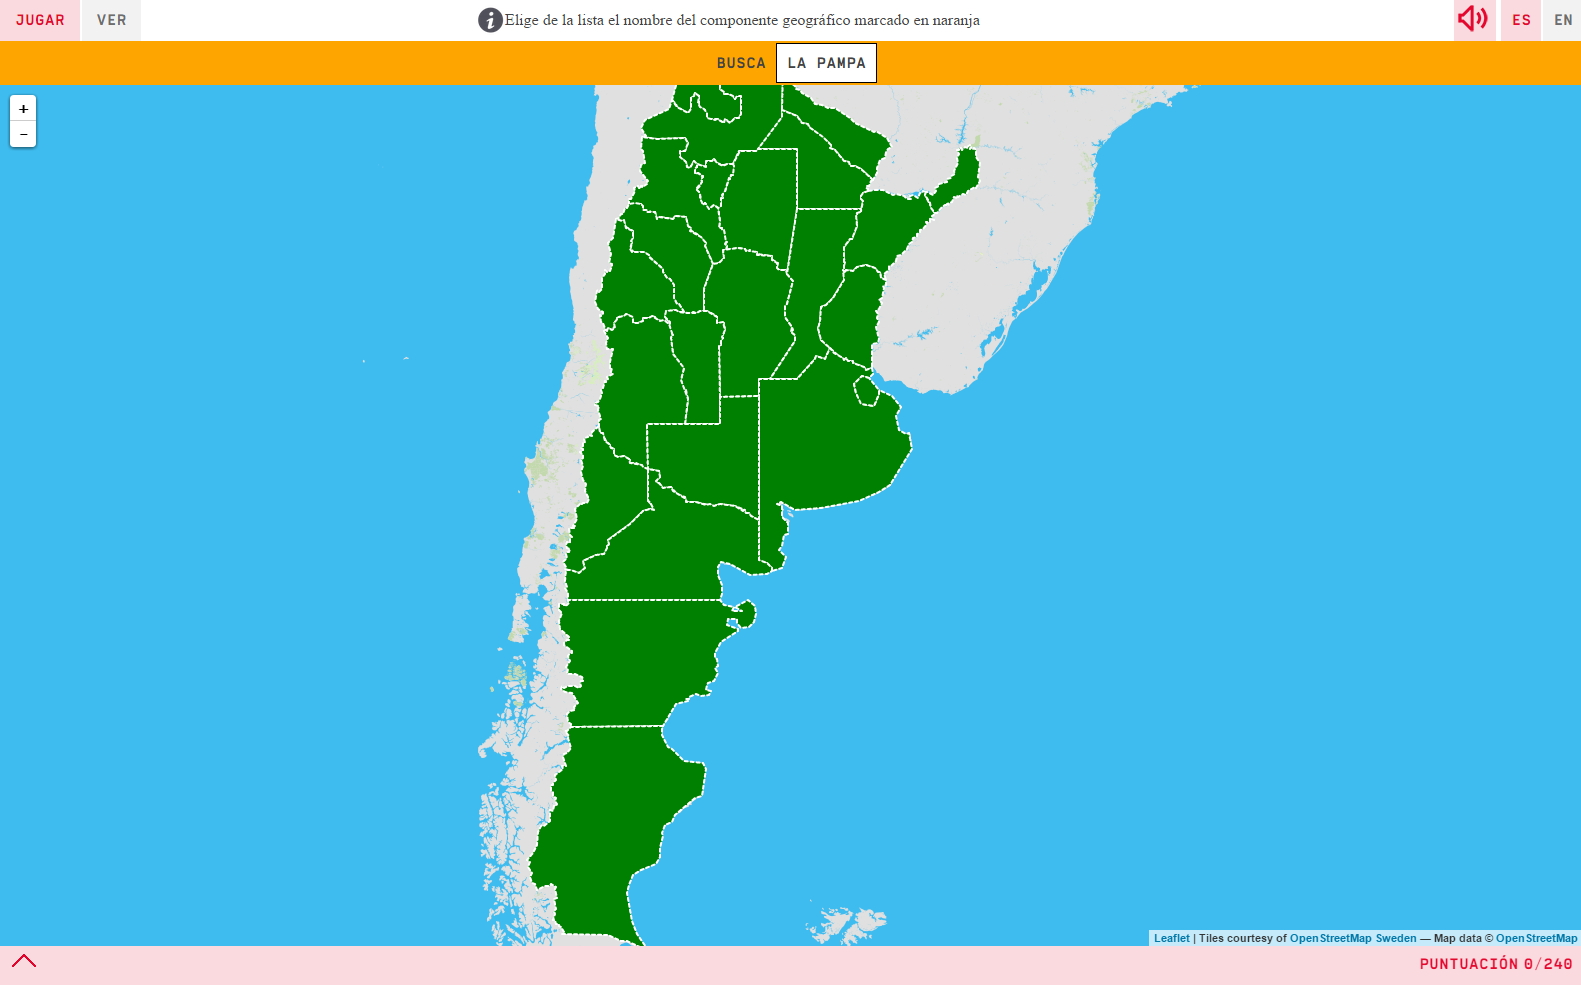 Provincias de Argentina